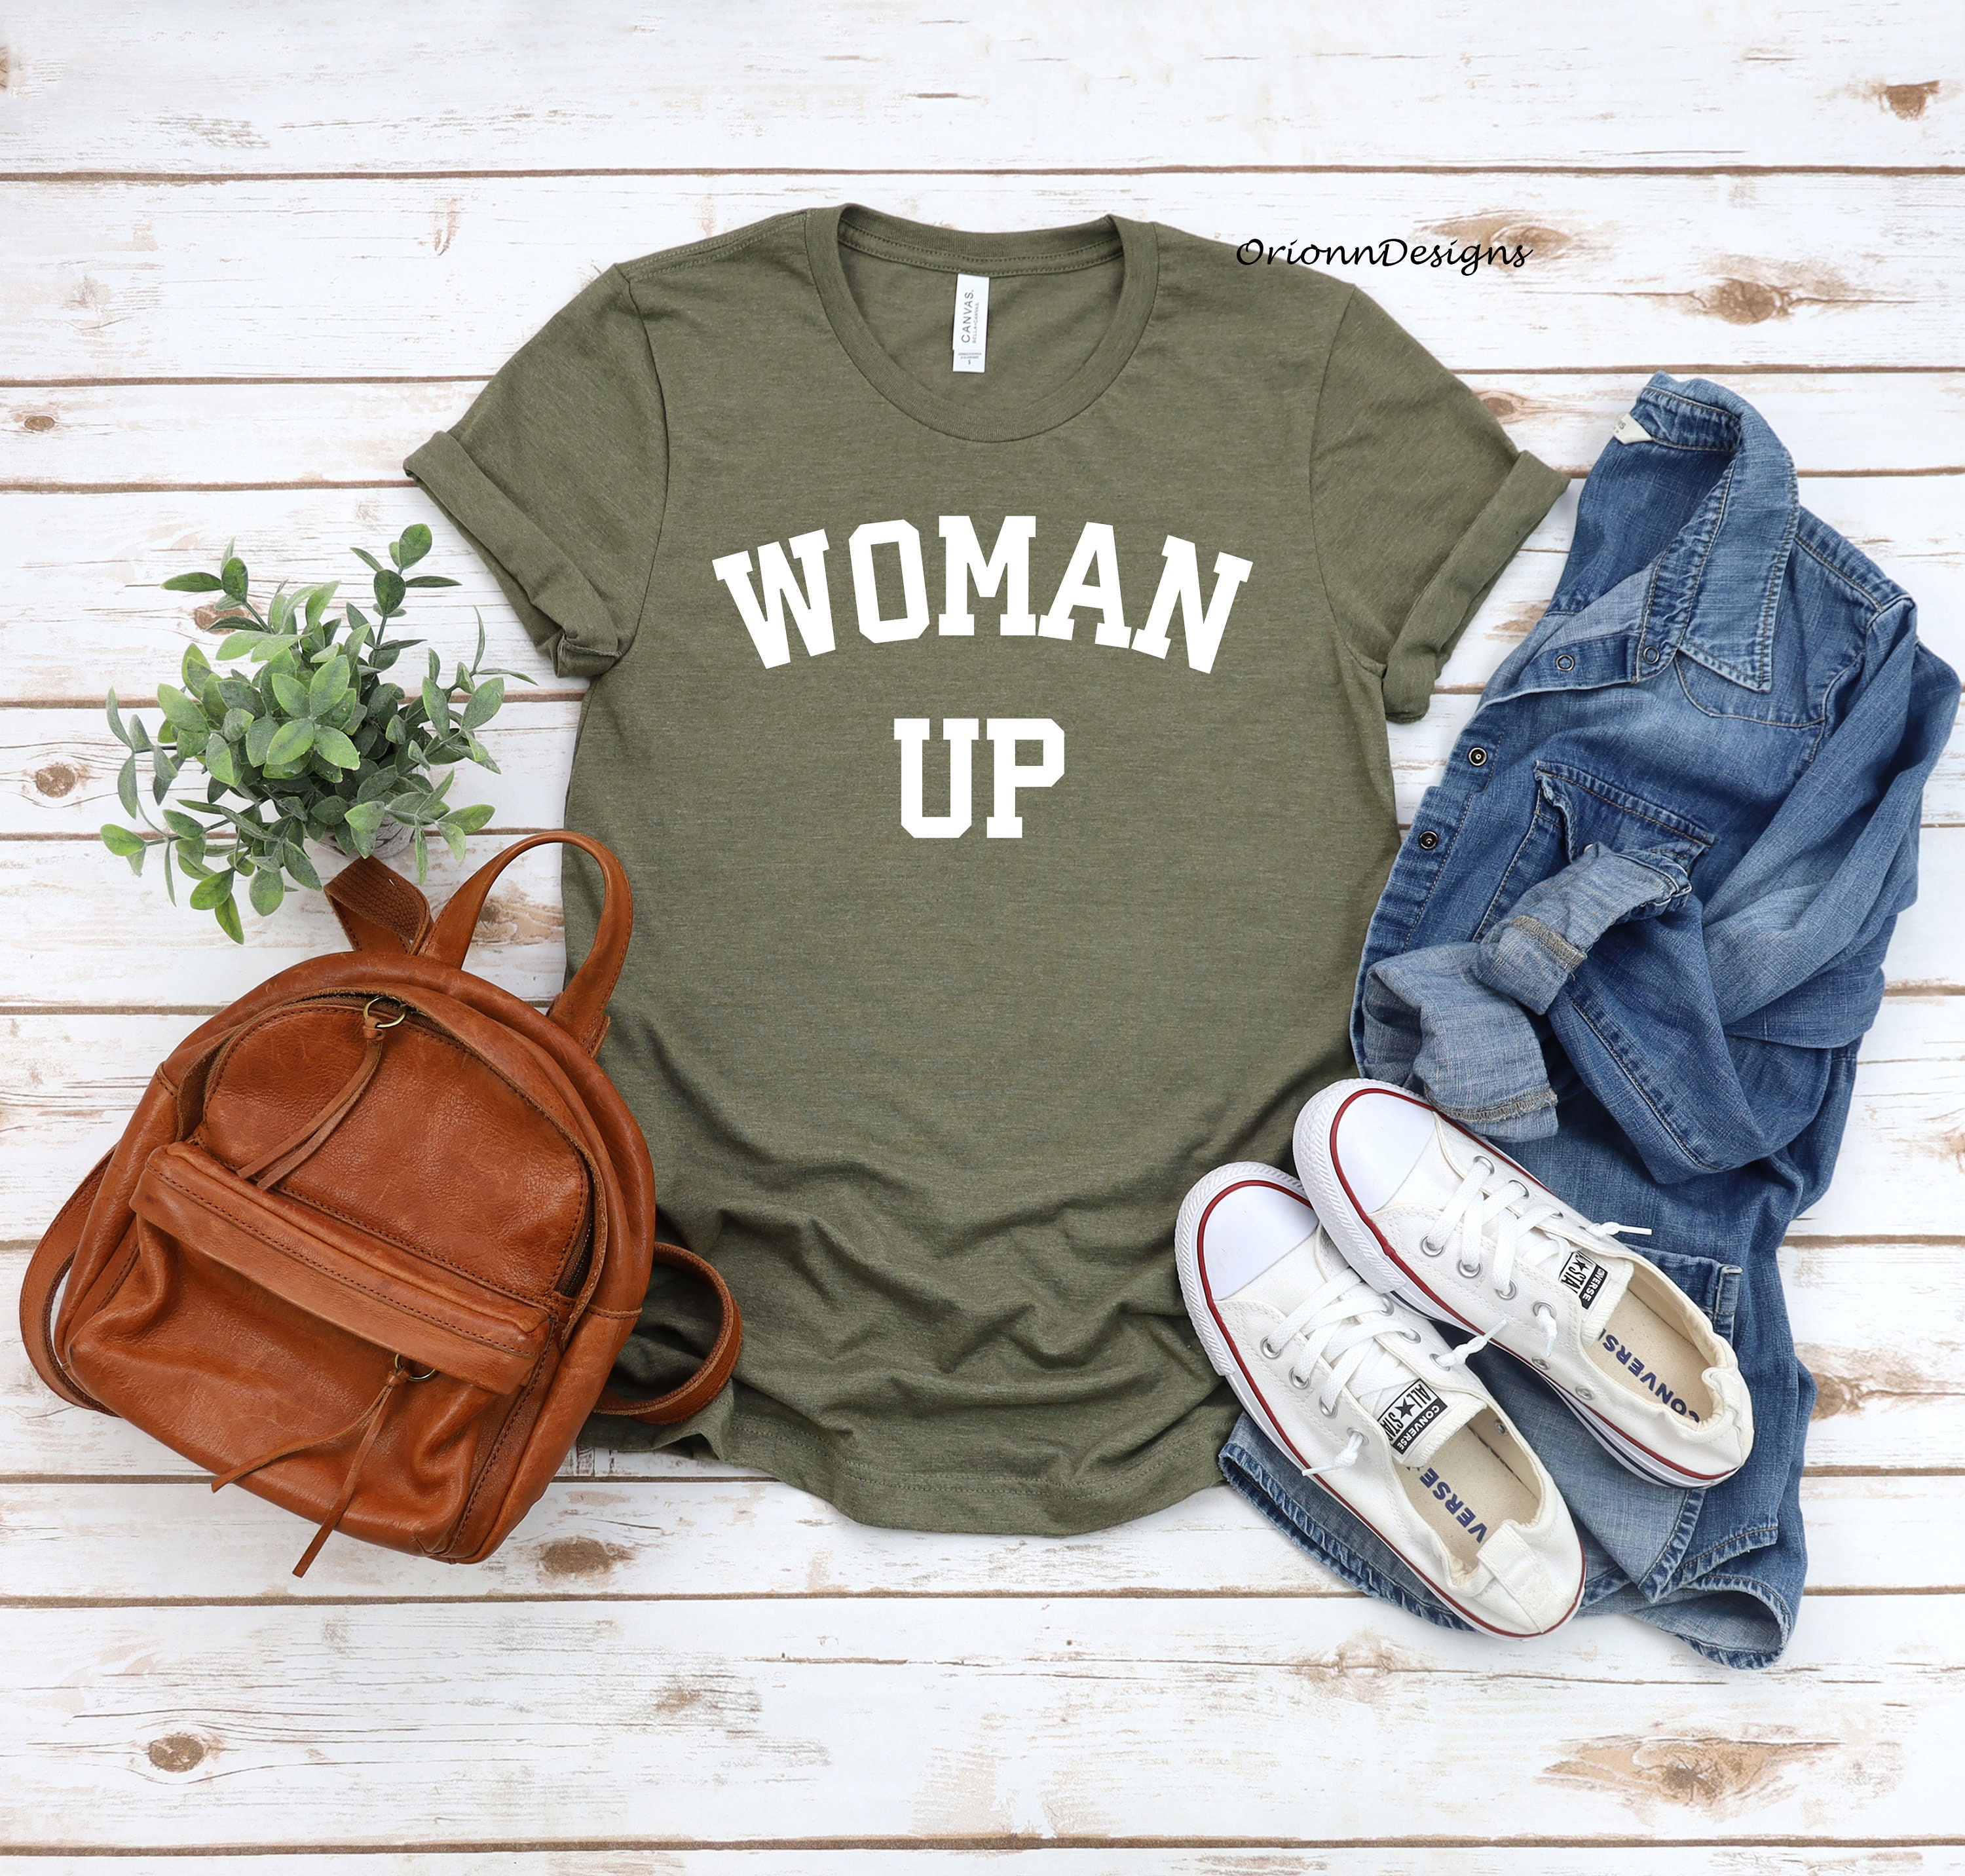 Discover Woman Up Shirt, Woman Up T shirt, Feminist Shirt, Women Empowerment, Women Up Tee, Motivational Shirt, Inspirational Shirt